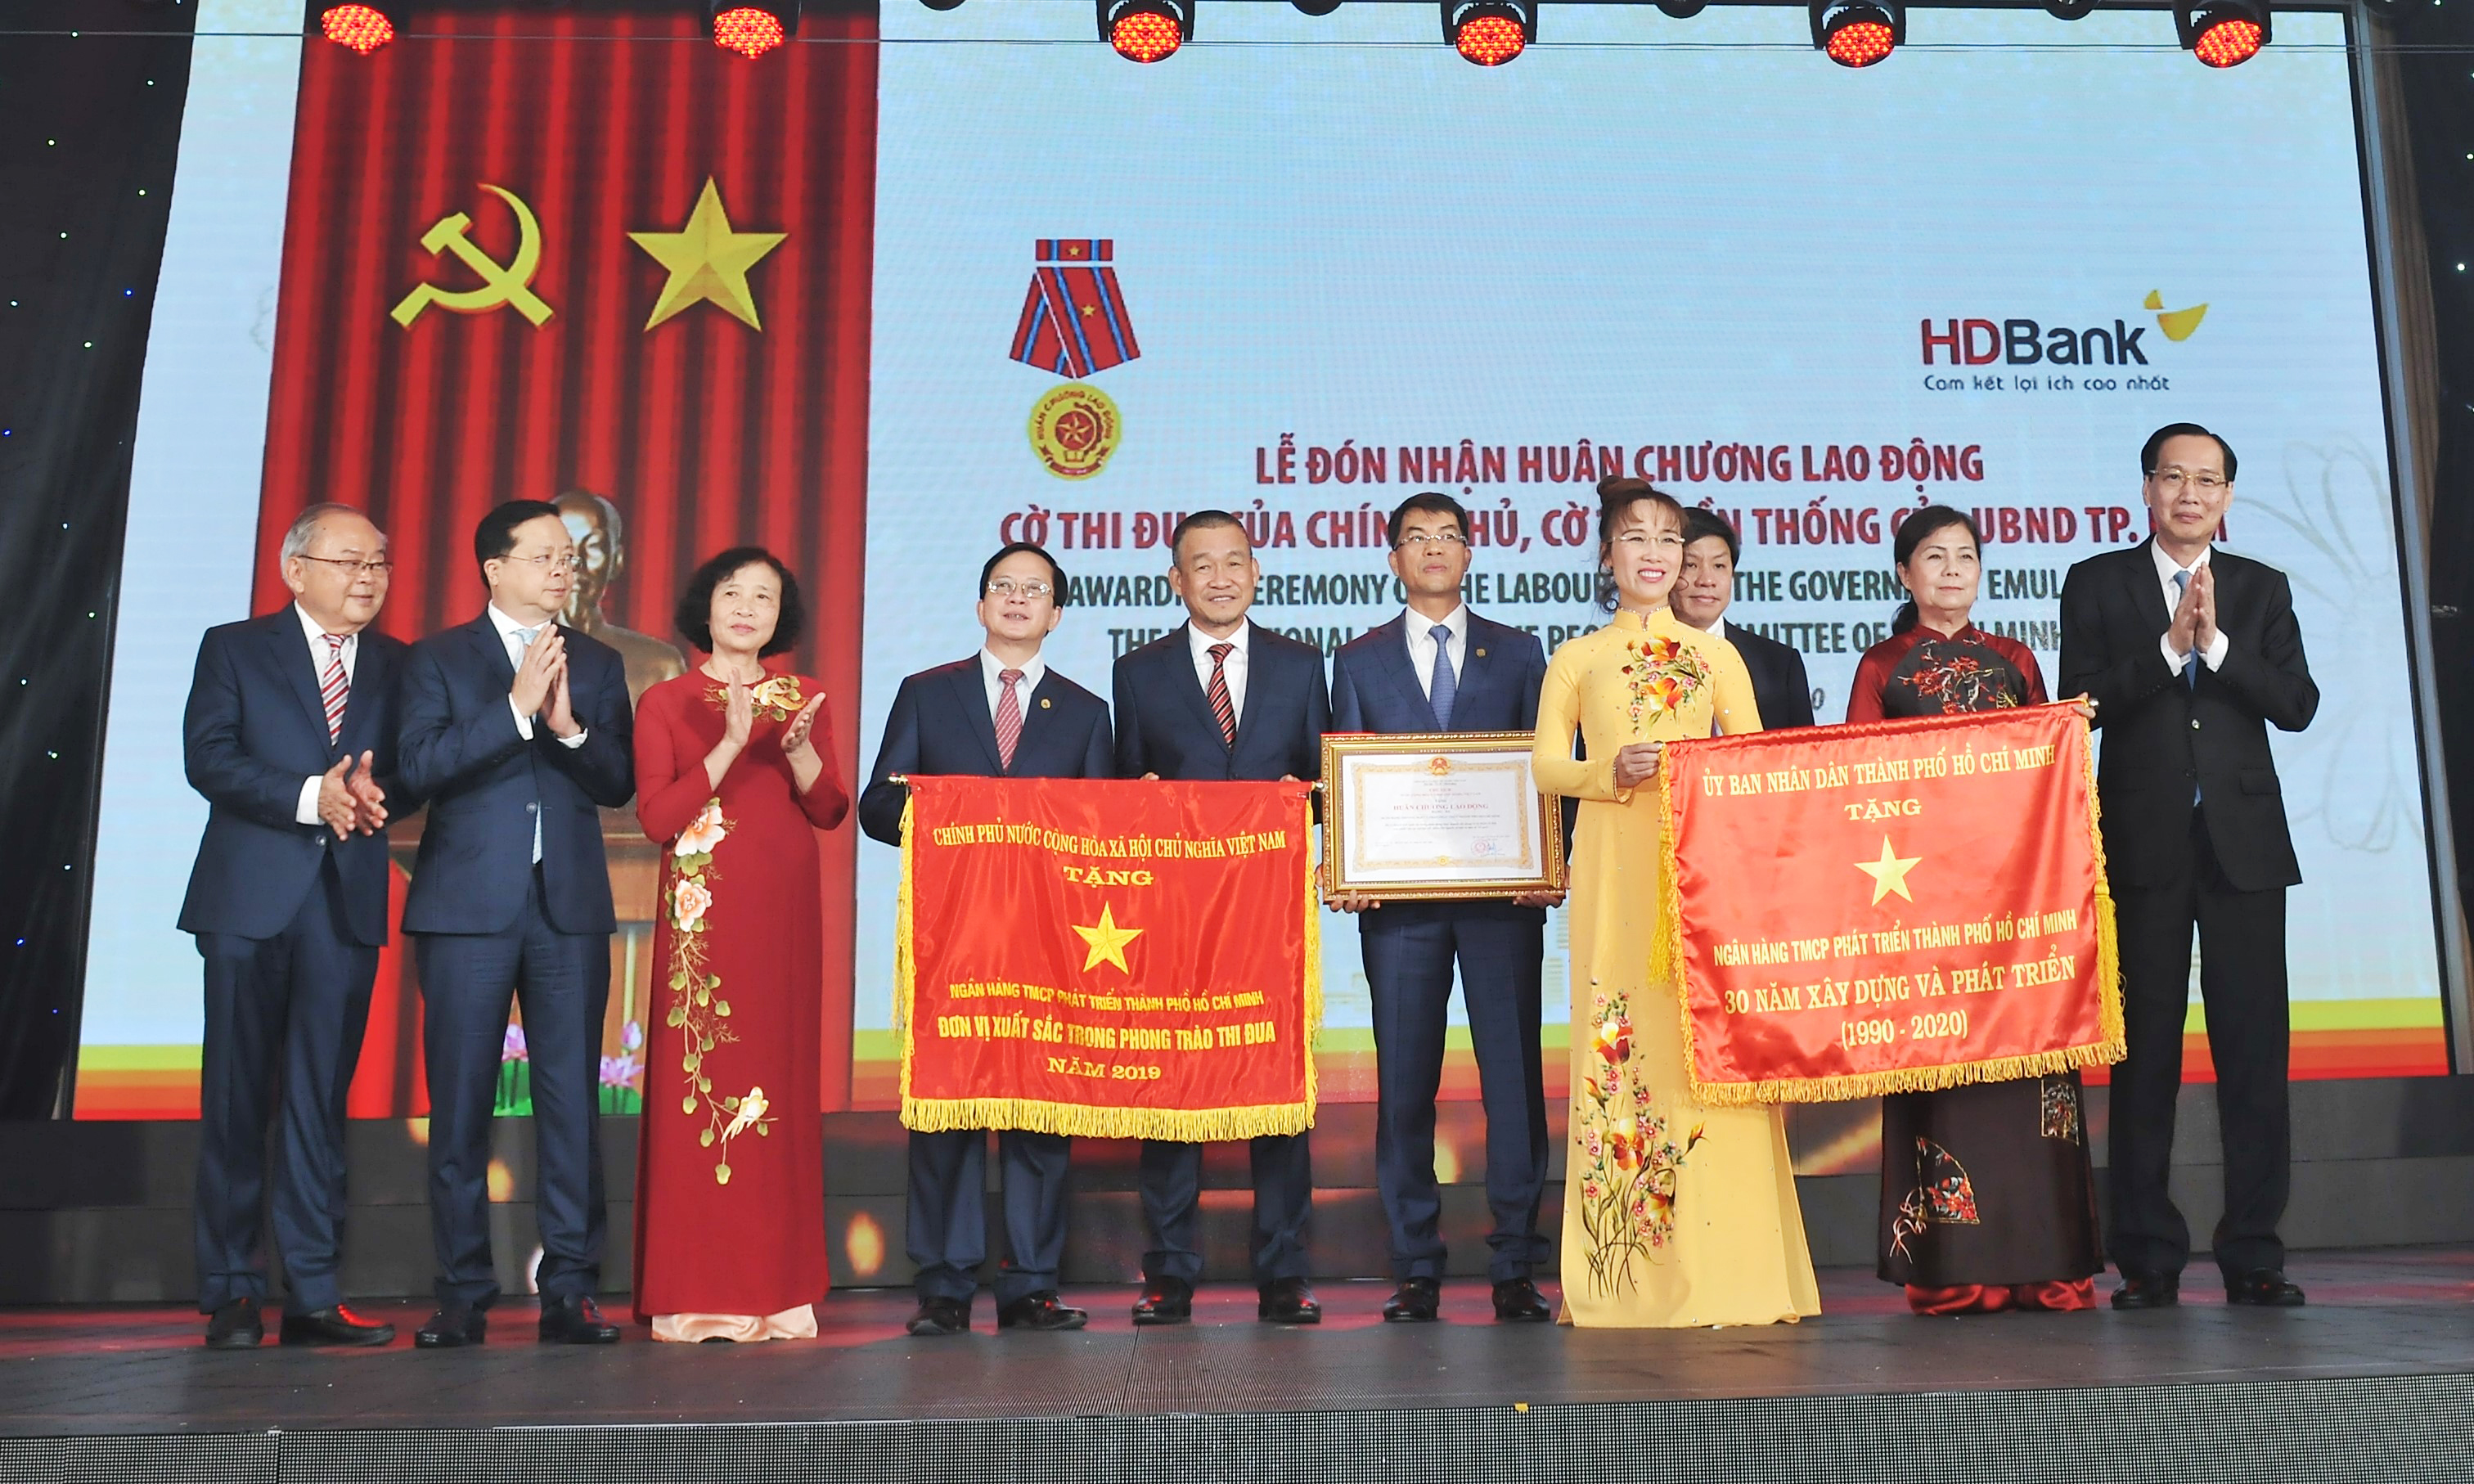 HDBank đón Huân chương lao động nhân kỷ niệm 30 năm thành lập 2